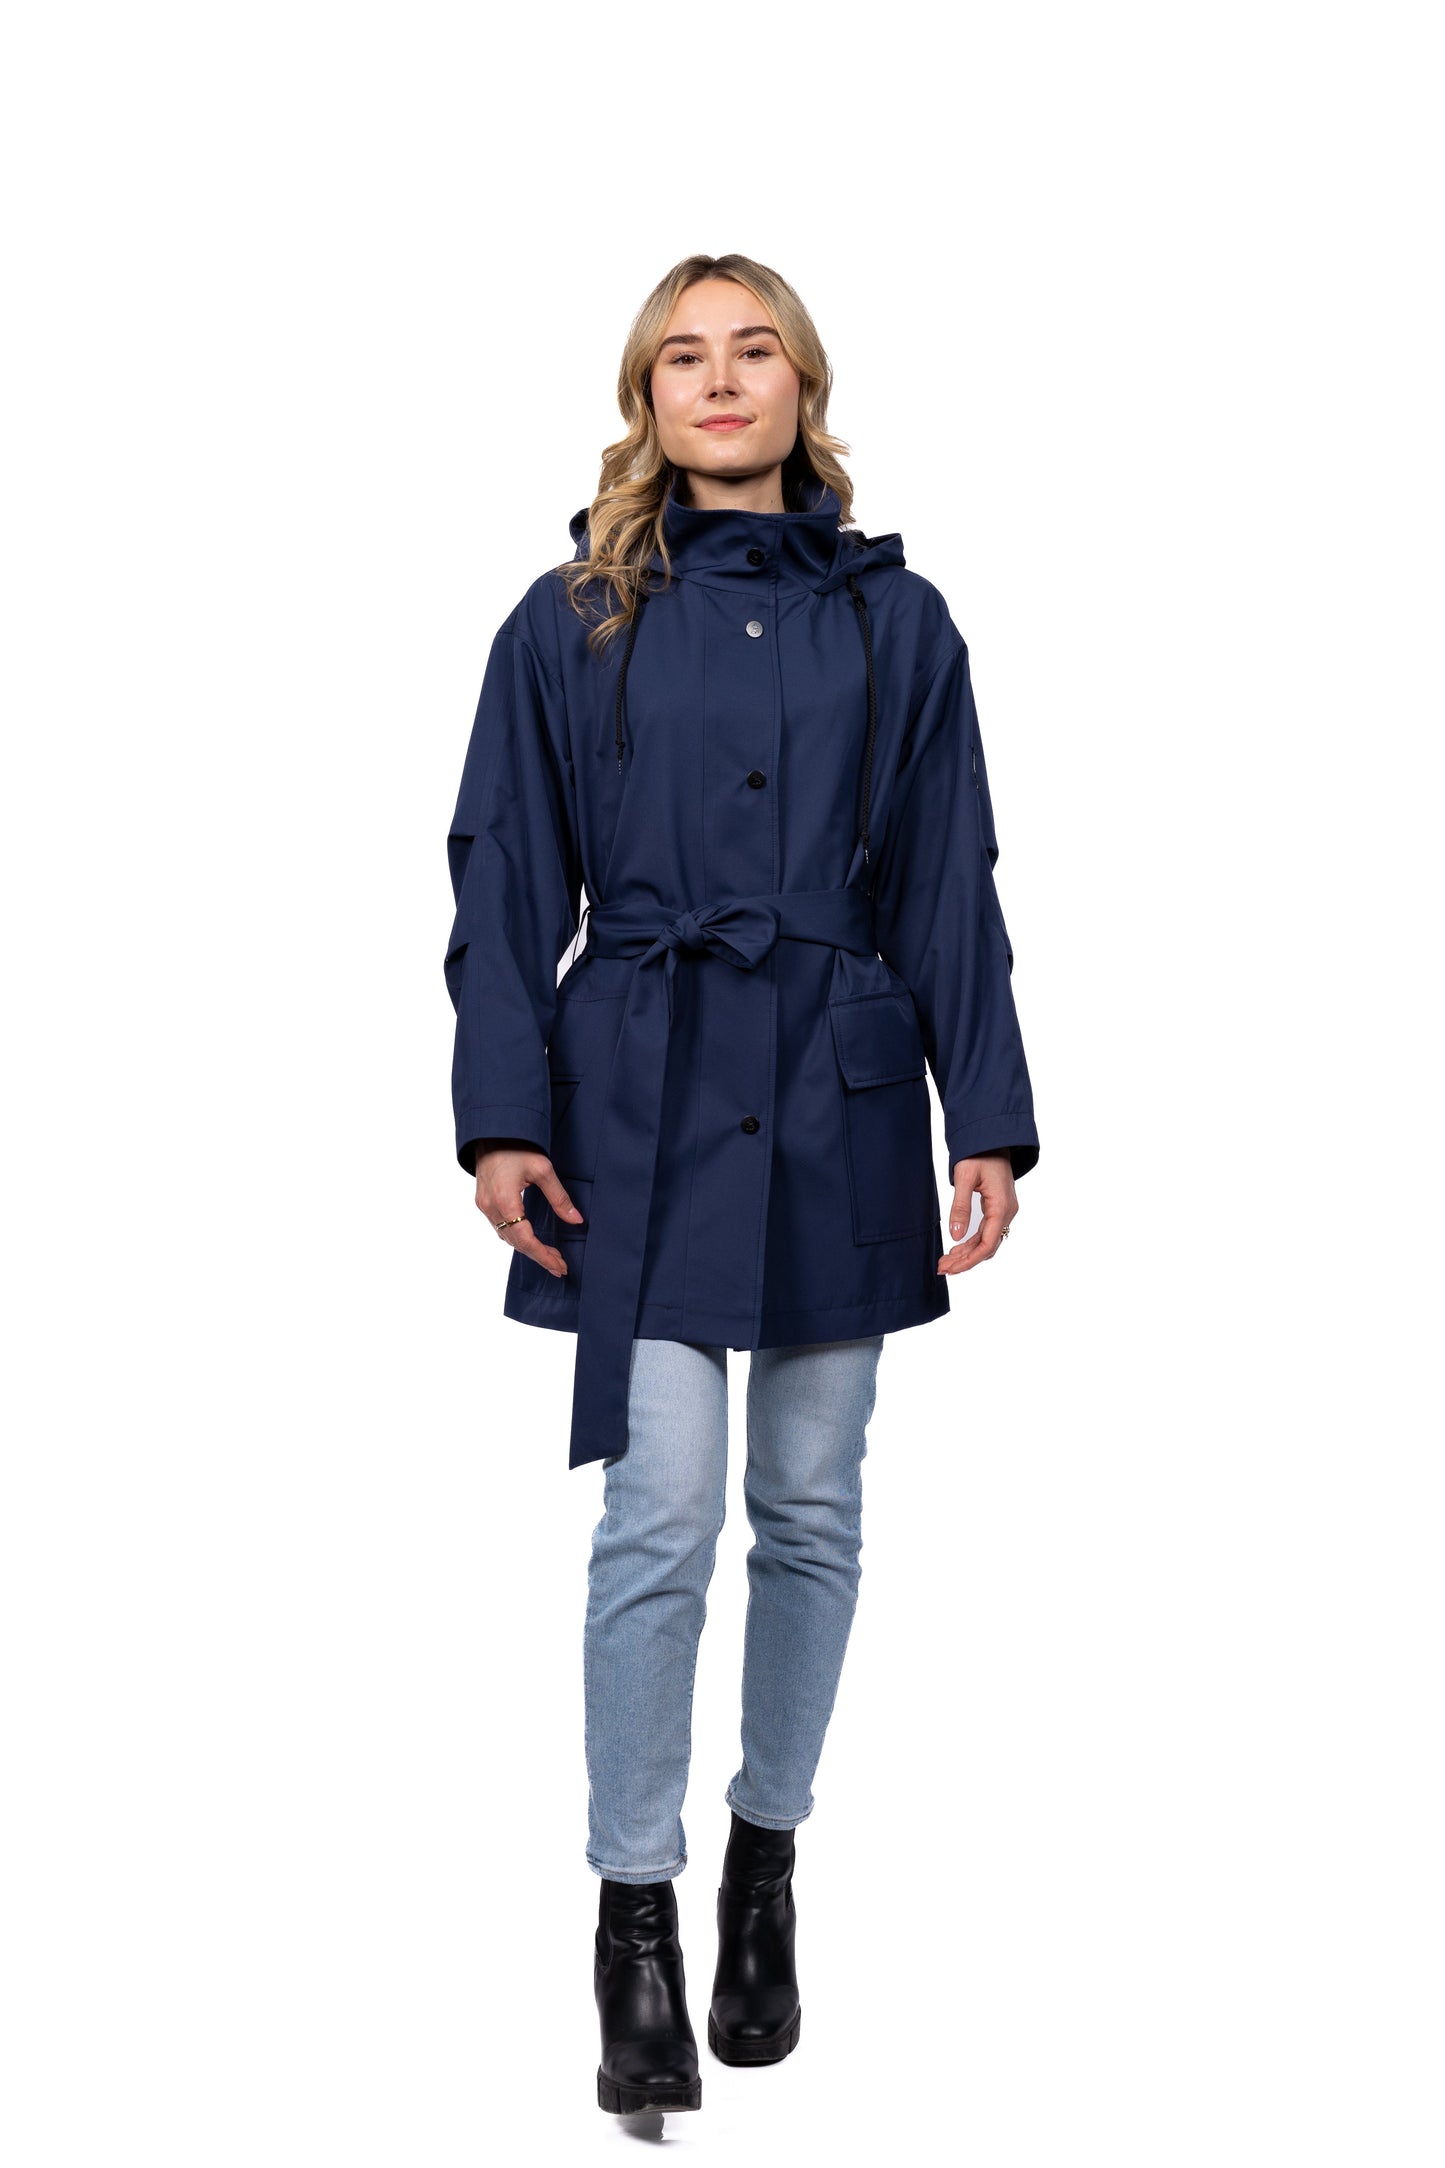 Desloups manteau mi-saison imperméable urbain avec capuchon, ample avec ceinture pour femme - Marine